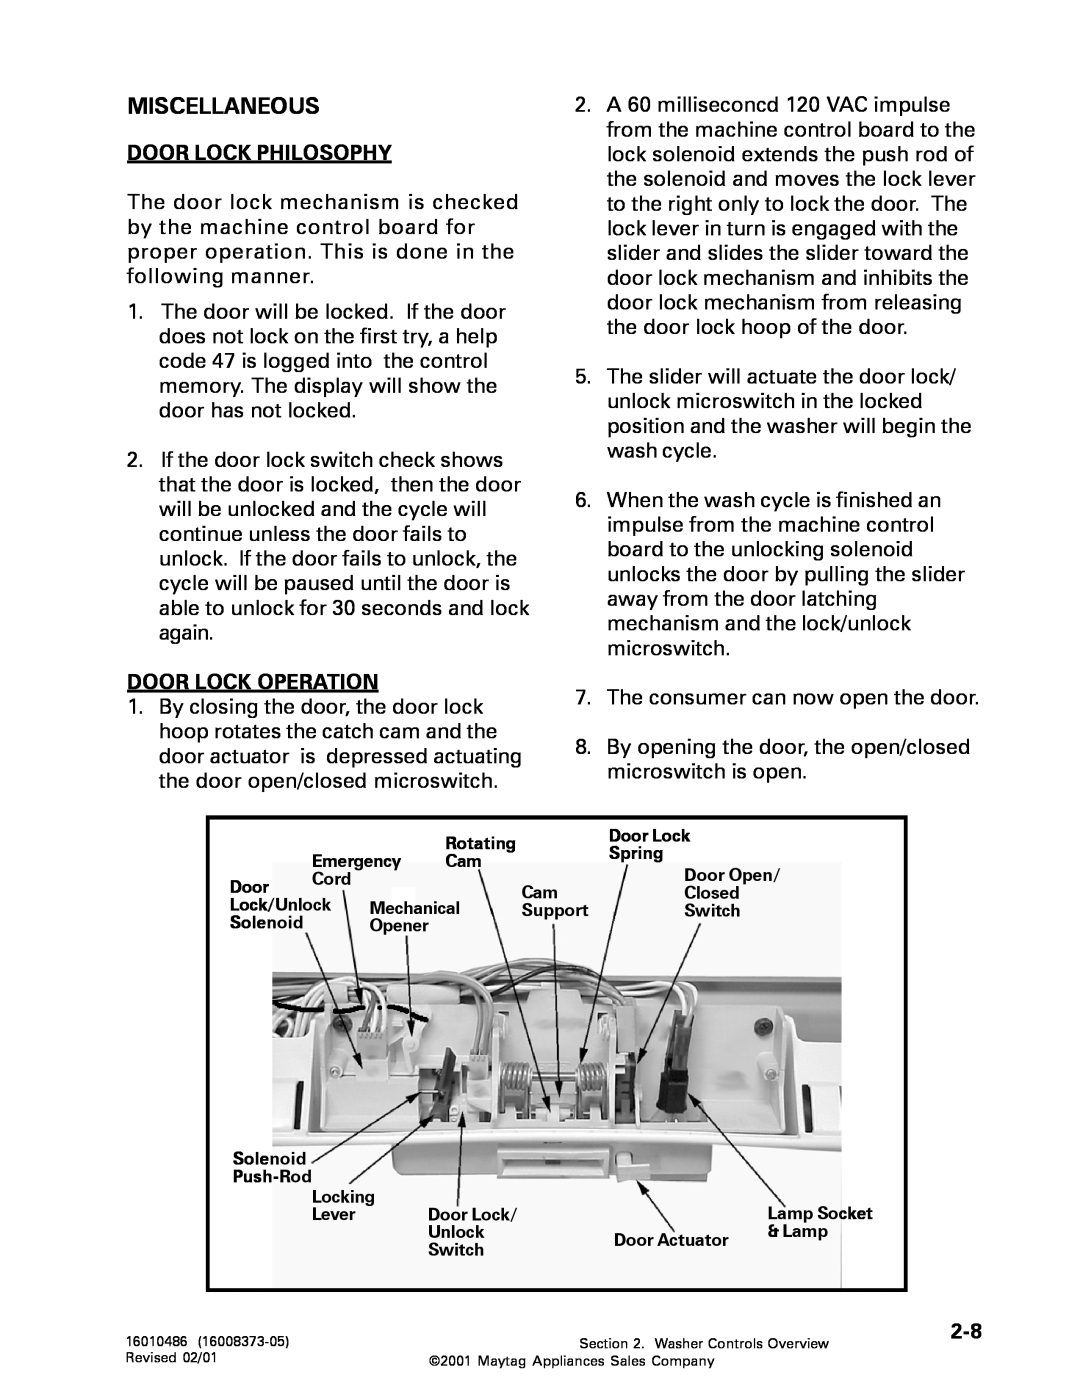 Whirlpool MAH3000 service manual Miscellaneous, Door Lock Philosophy, Door Lock Operation 